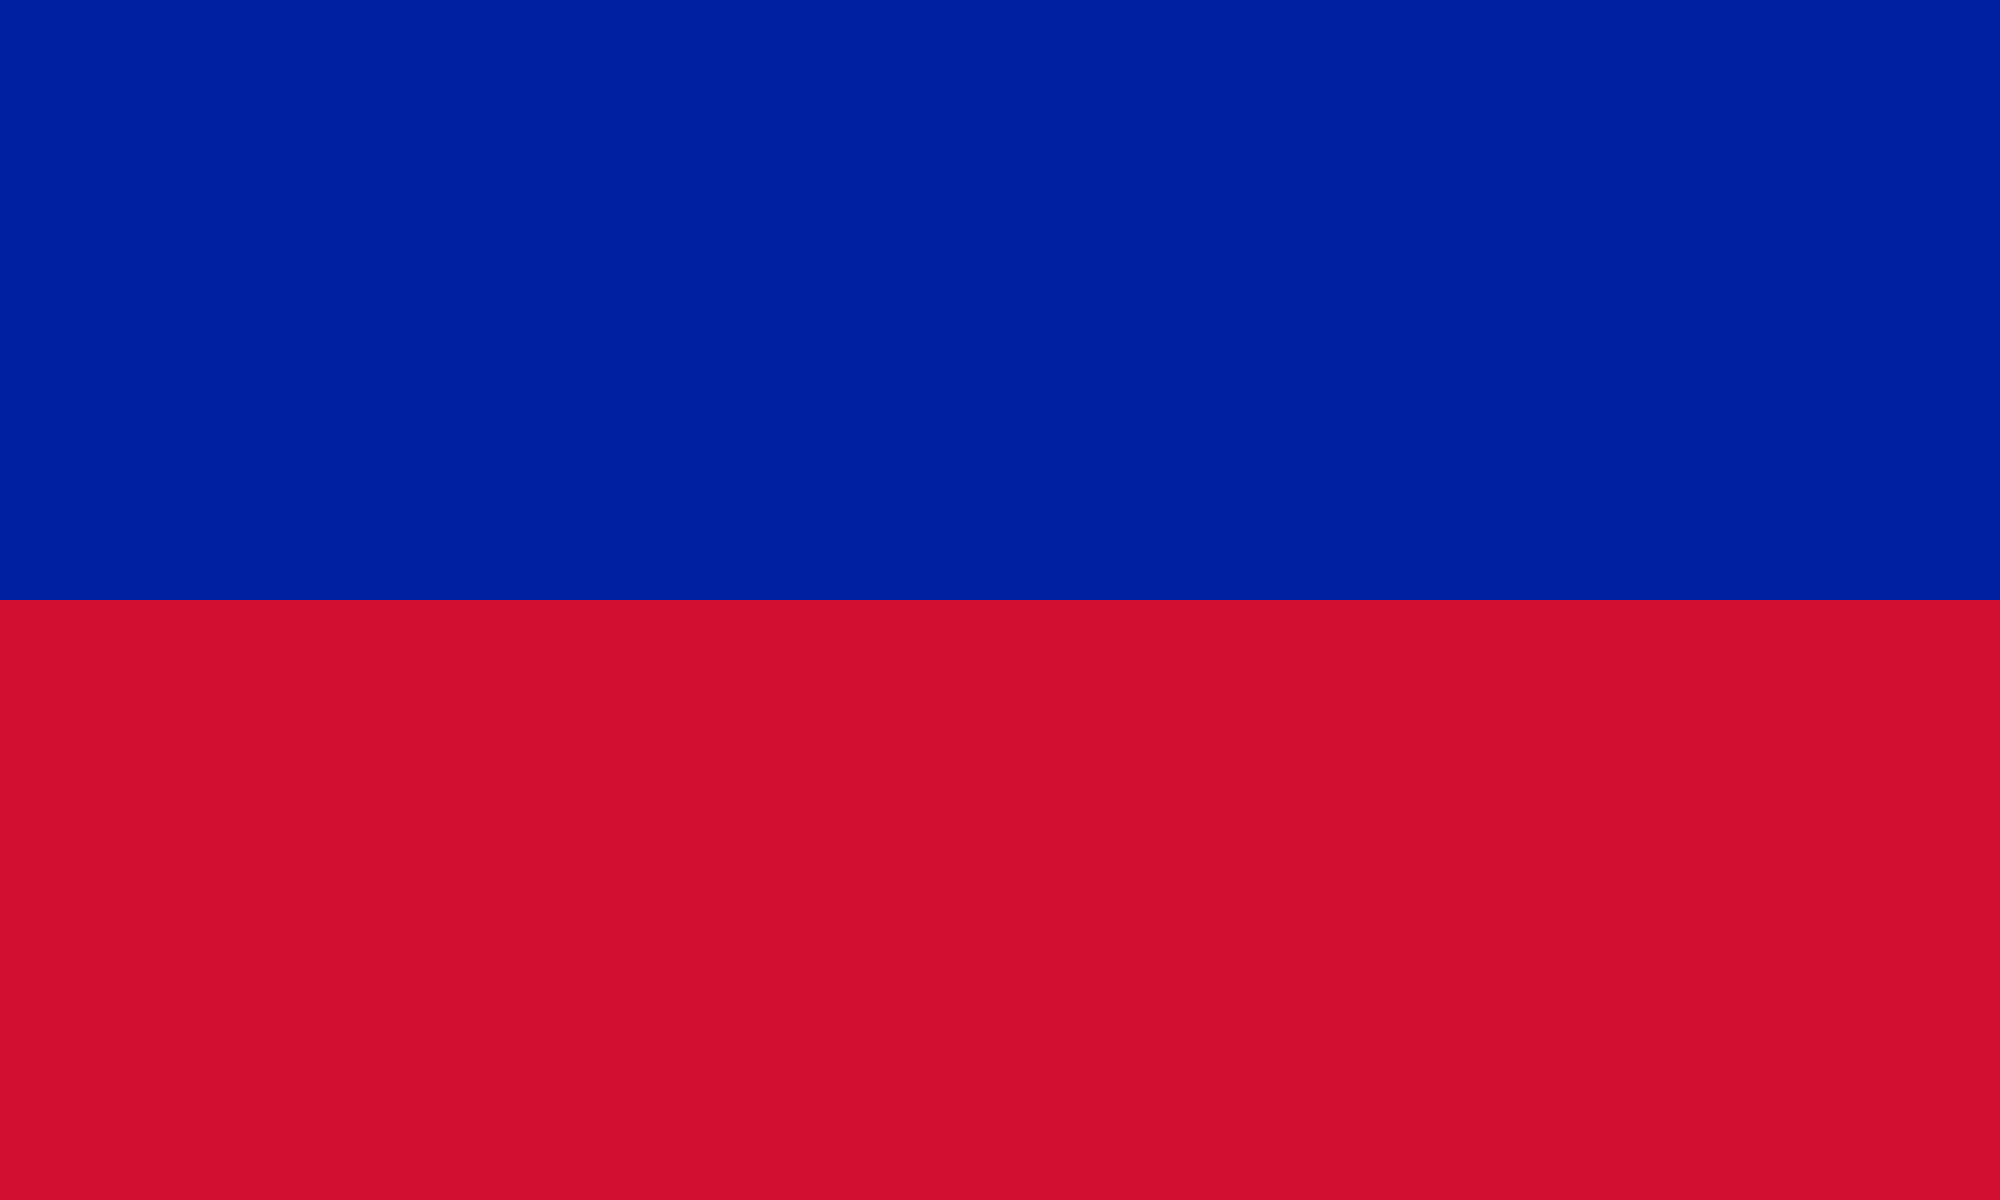 Haiti (Civil flag)